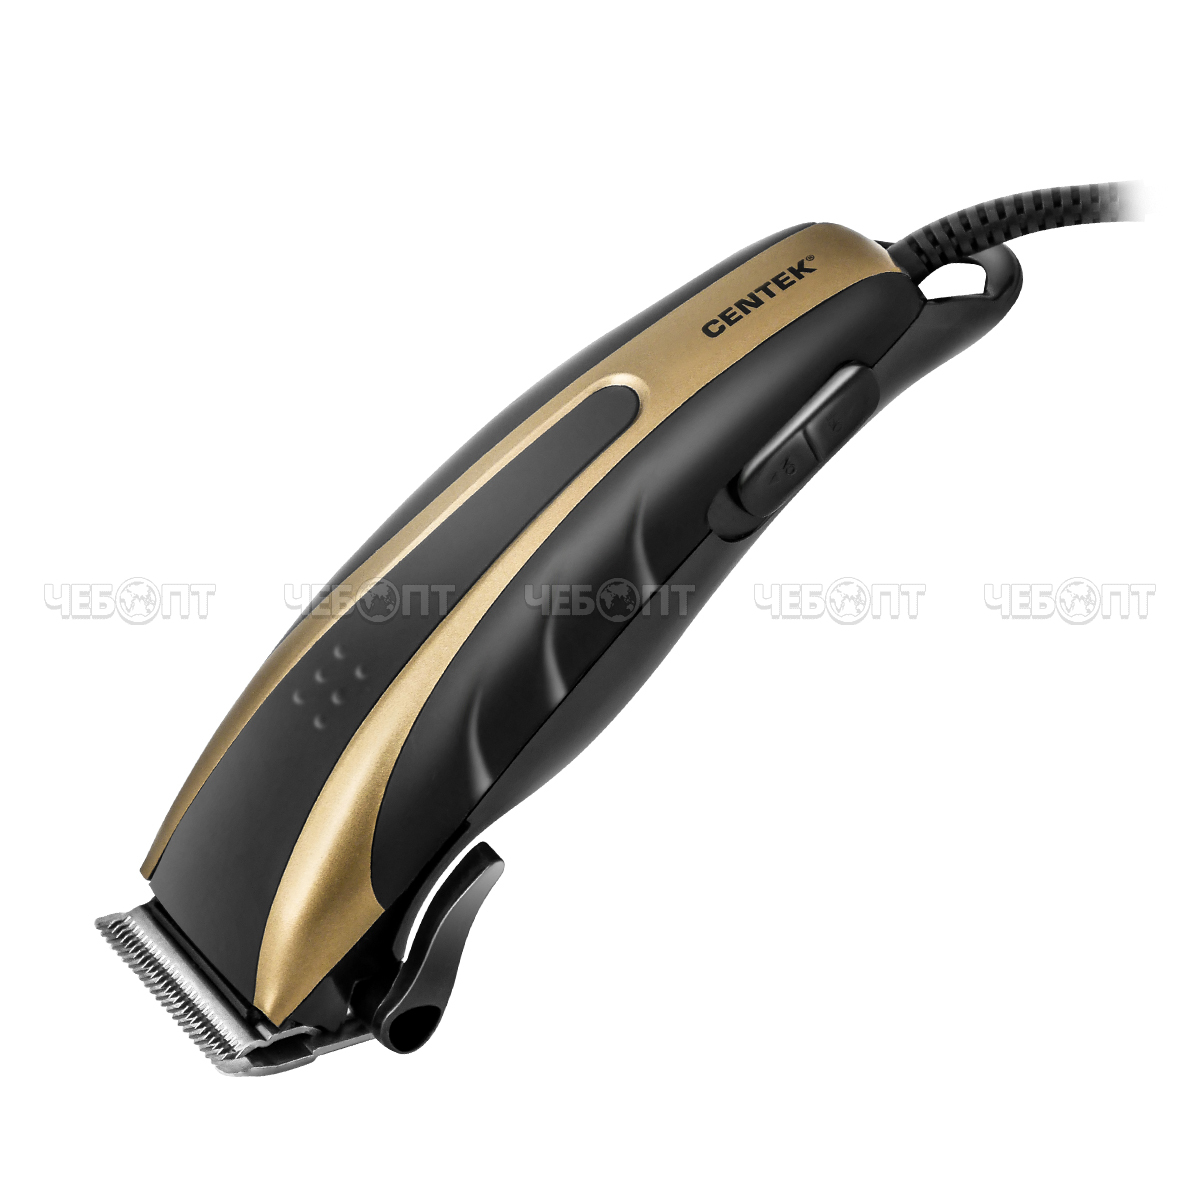 Машинка для стрижки волос CENTEK CT-2110 (черный/золотой) высококач. сталь, титановые ножи, насадки, эргономичный дизайн мощн. 10 Вт [12]. ЧЕБОПТ.